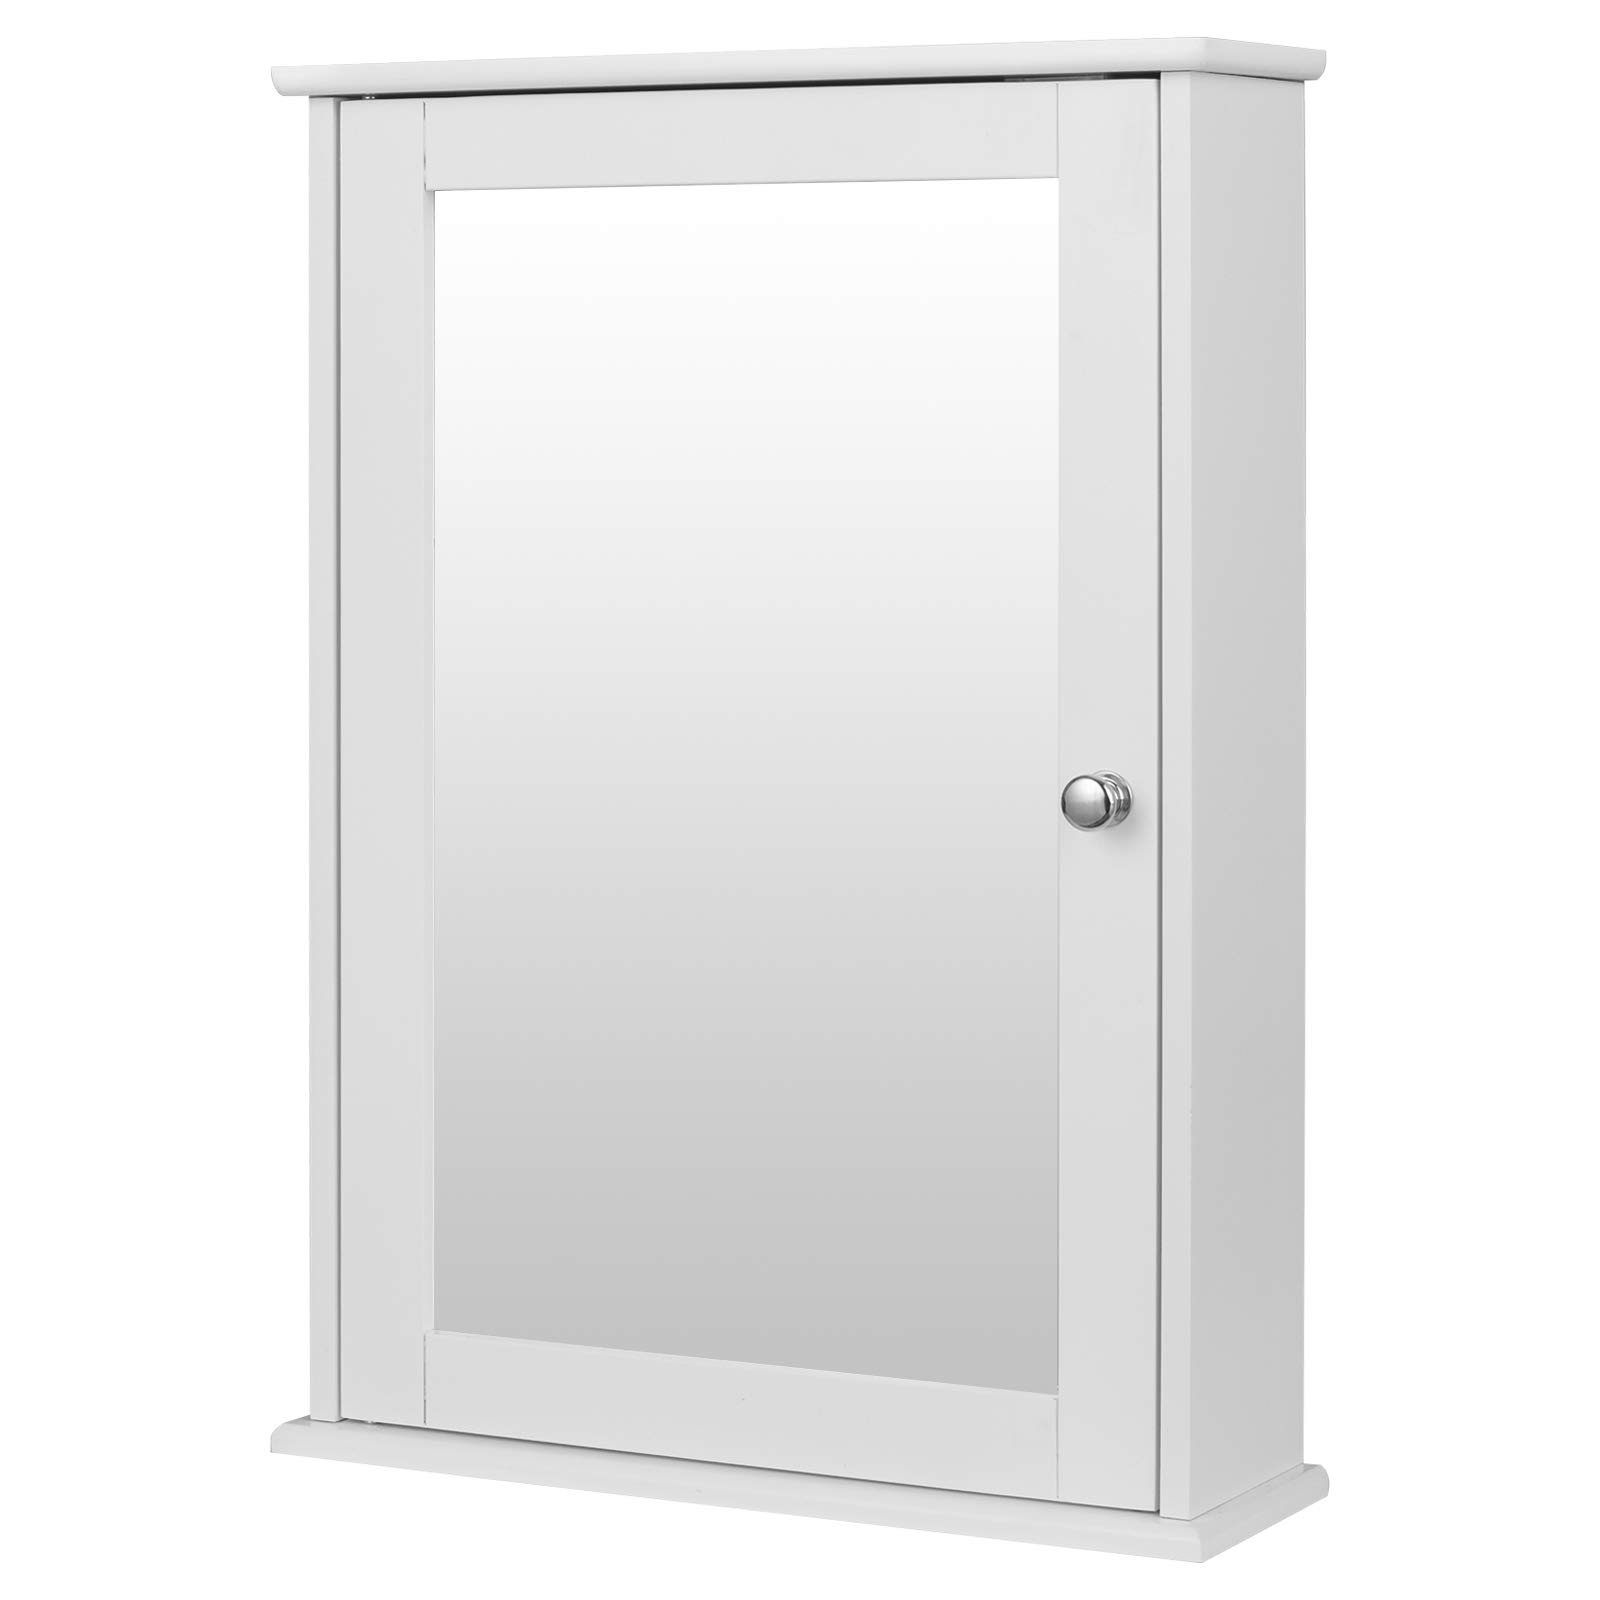 eSituro SBP0027 Spiegelschrank Badspiegel Hängeschrank mit Türen Wandschrank Badschrank Weiß BHT ca: 42x58,5x12cm